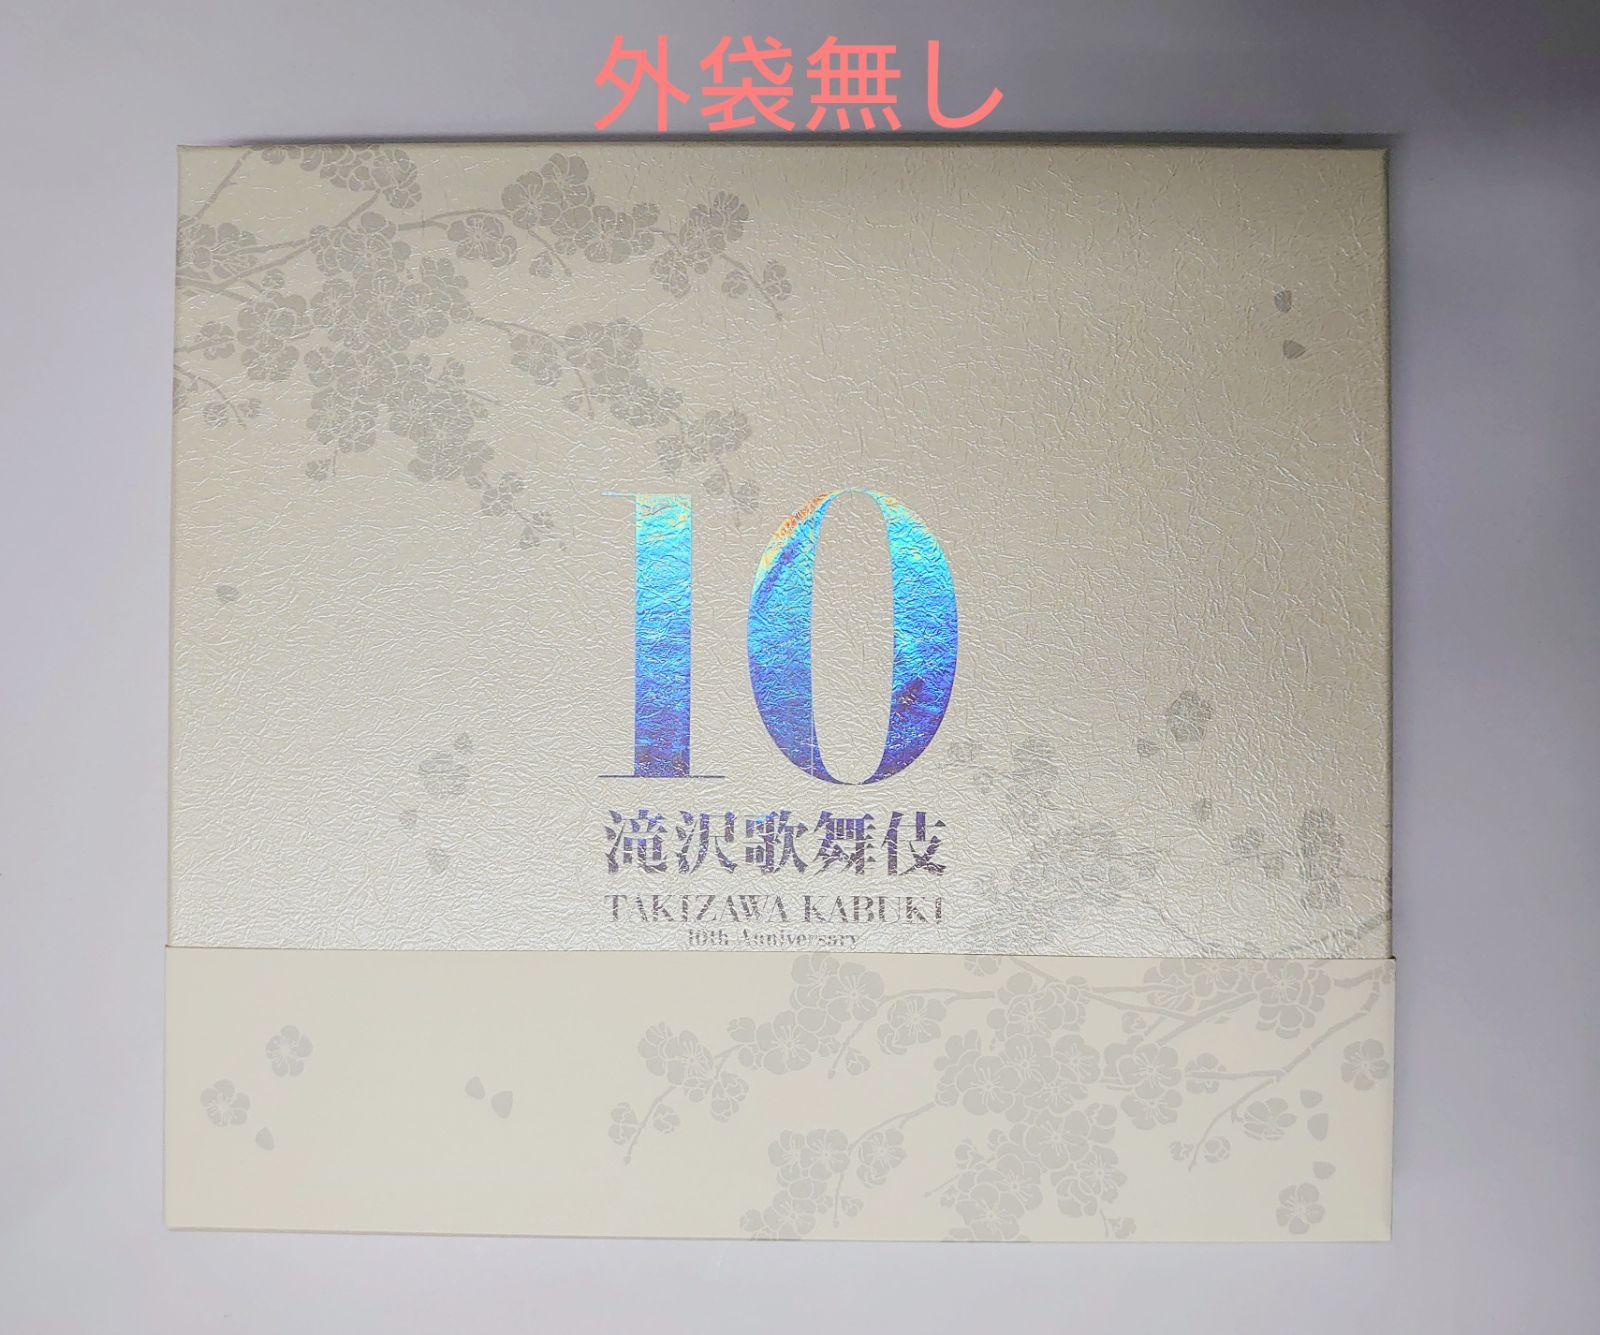 滝沢歌舞伎 10th Anniversary よ～いやさぁ～盤 - TRIO原宿店 - メルカリ